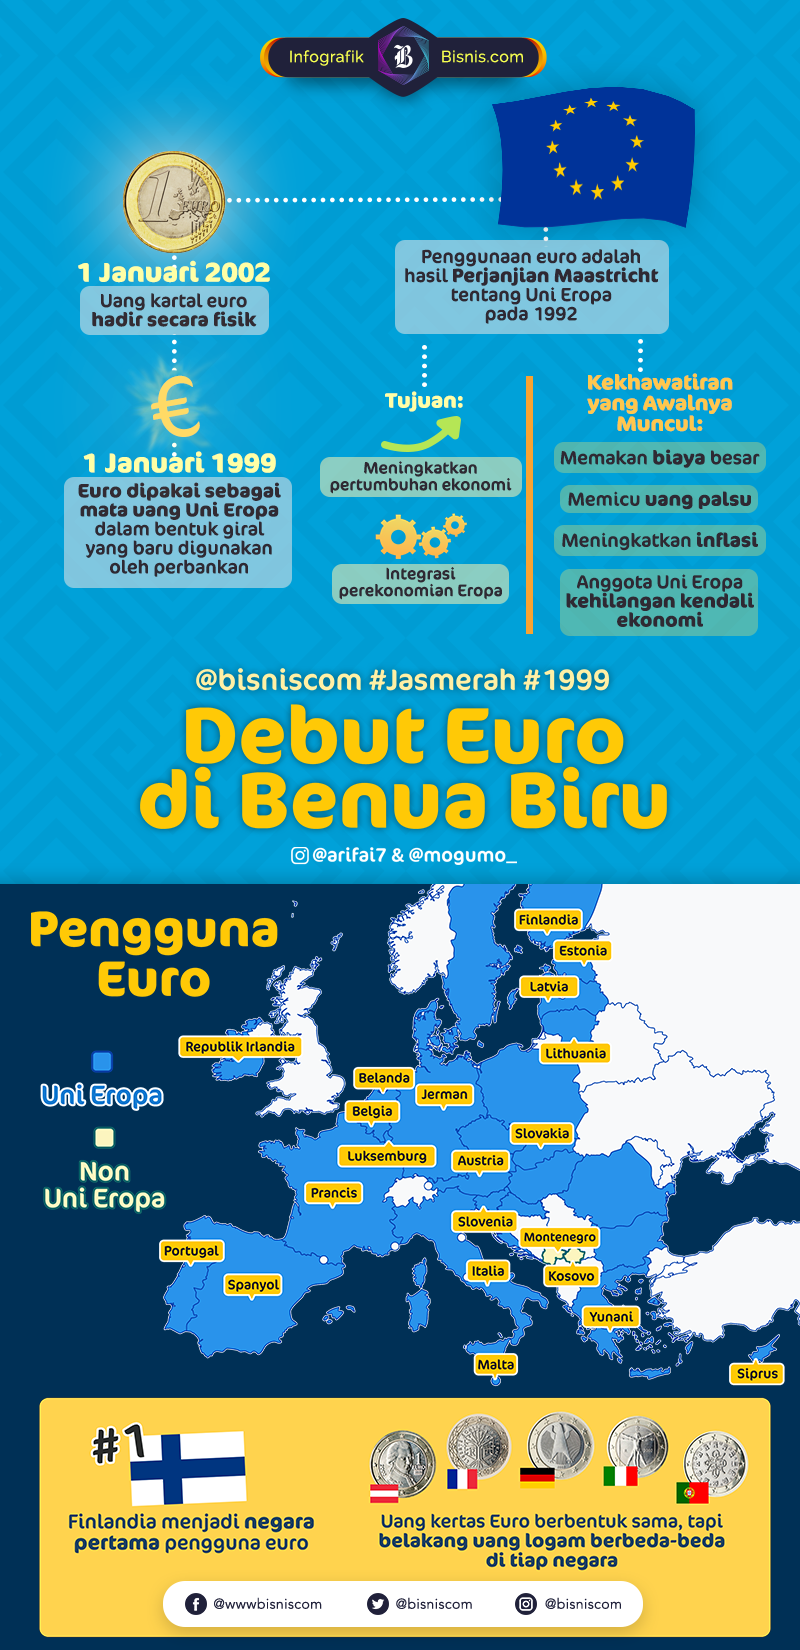  Januari 1999, Debut Euro Sebagai Mata Uang Komunitas Benua Biru